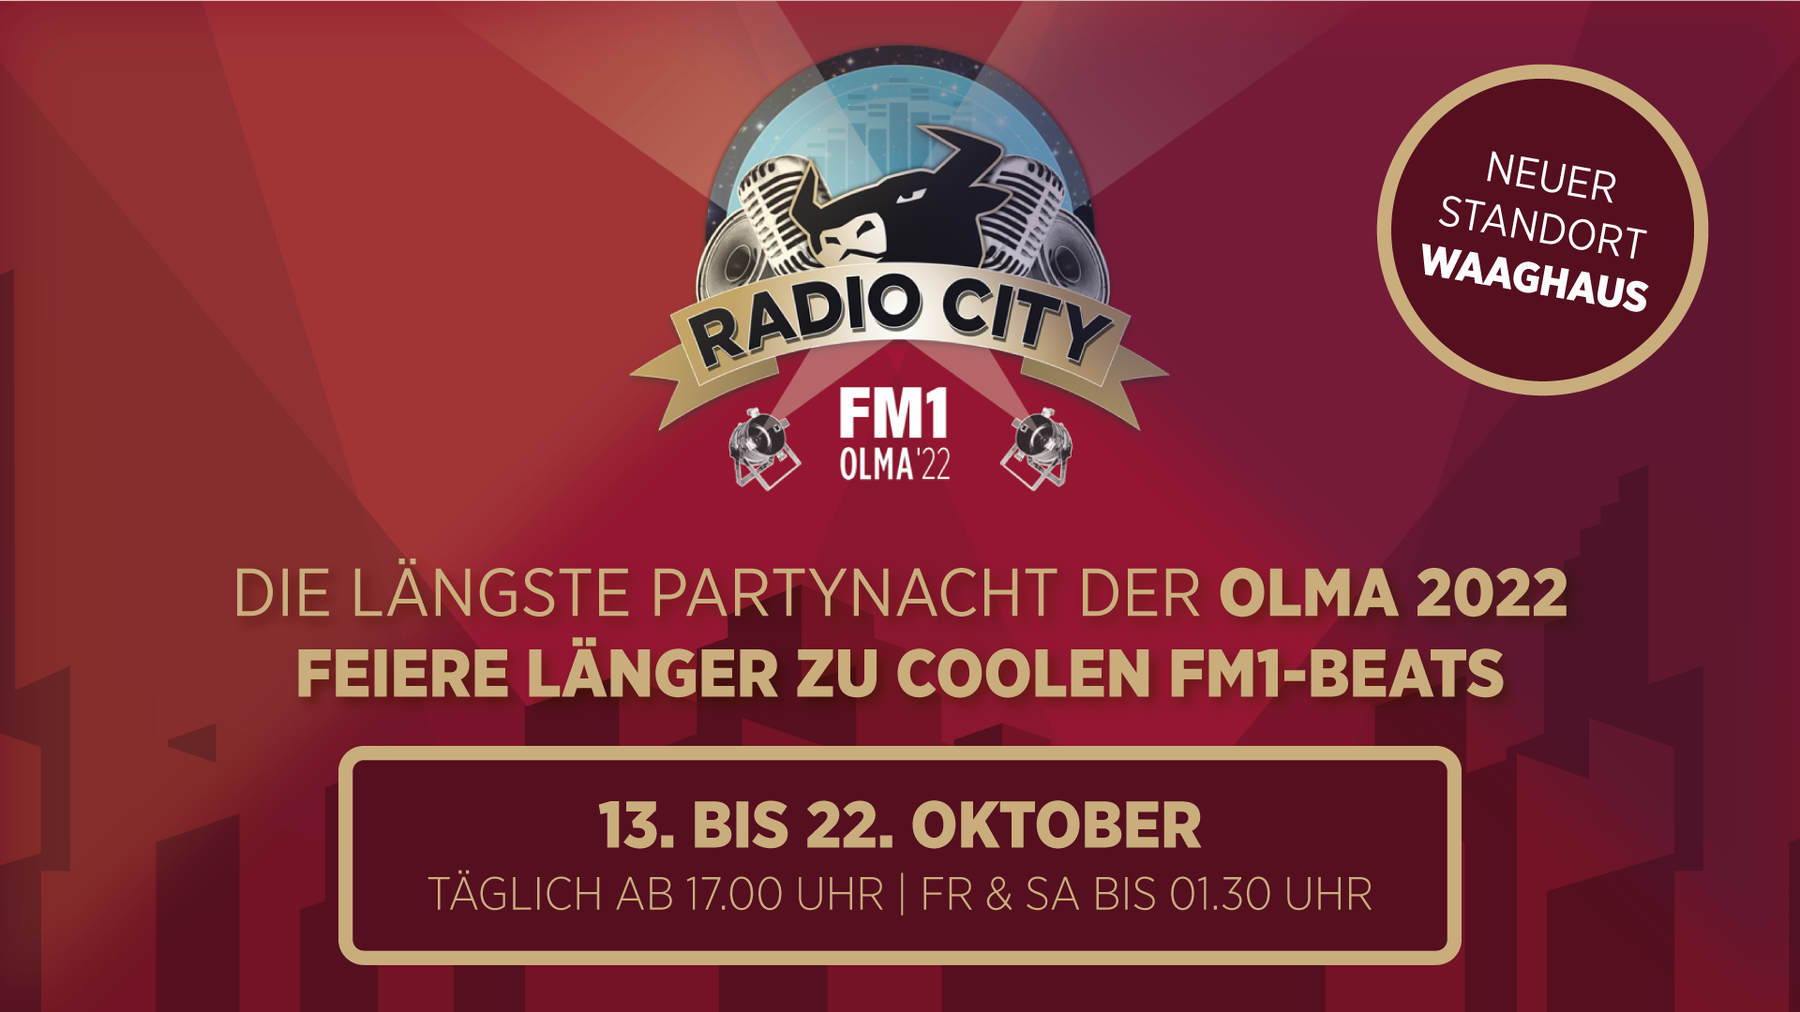 Weitere Informationen zur FM1 Radio City gibt's unter: www.fm1radiocity.ch